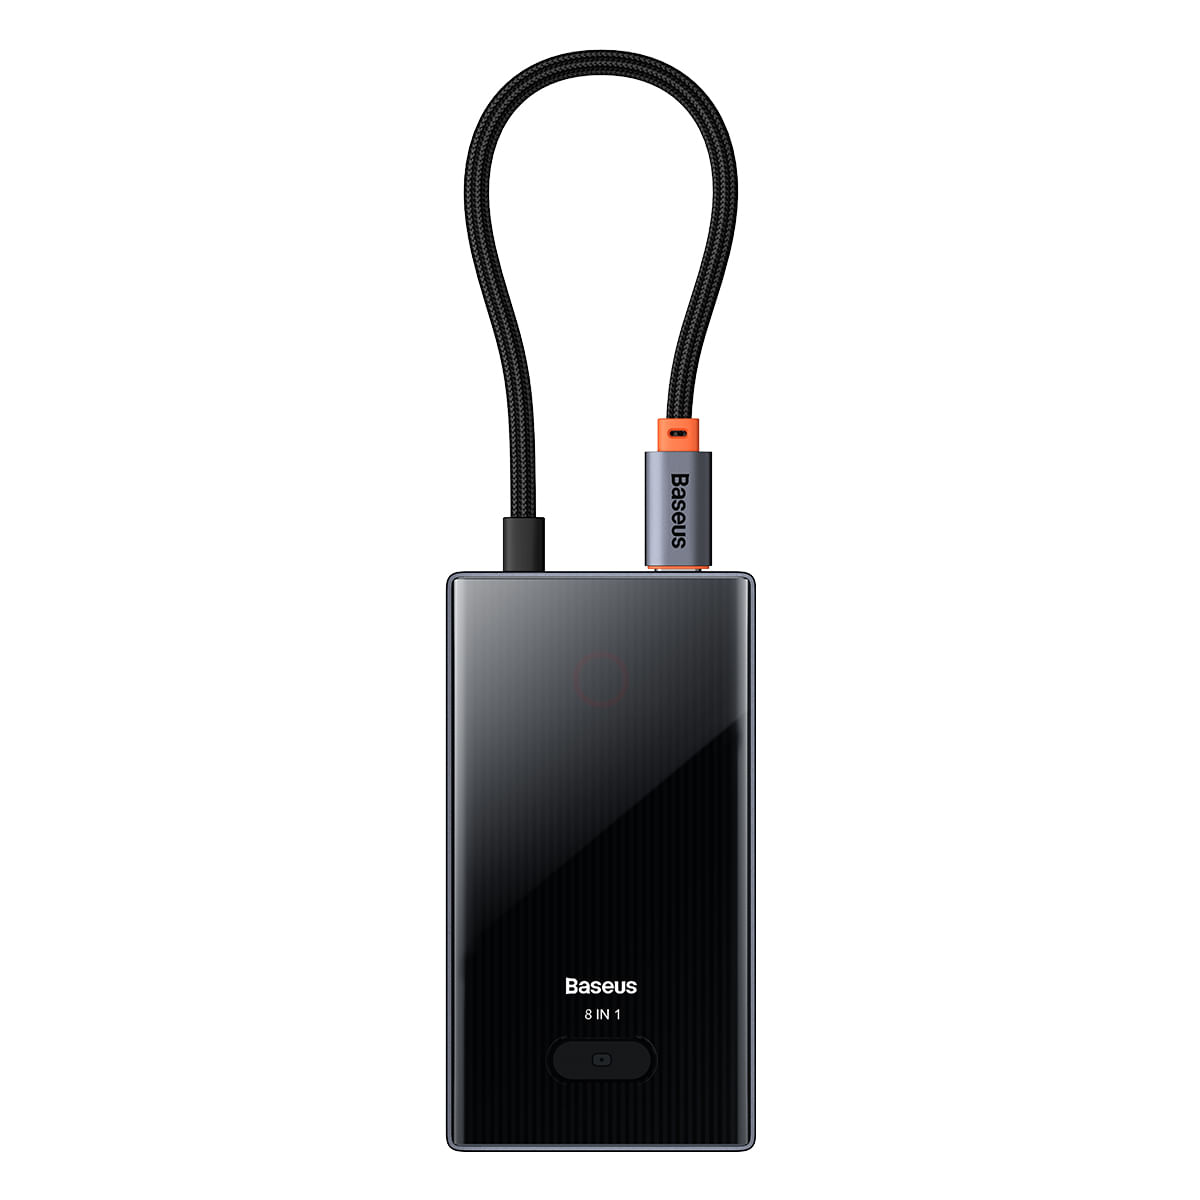 Hub Adaptador Baseus USB Tipo C 8 en 1 HDMI 4K Tipo C USB 3.0 Lector Micro SD